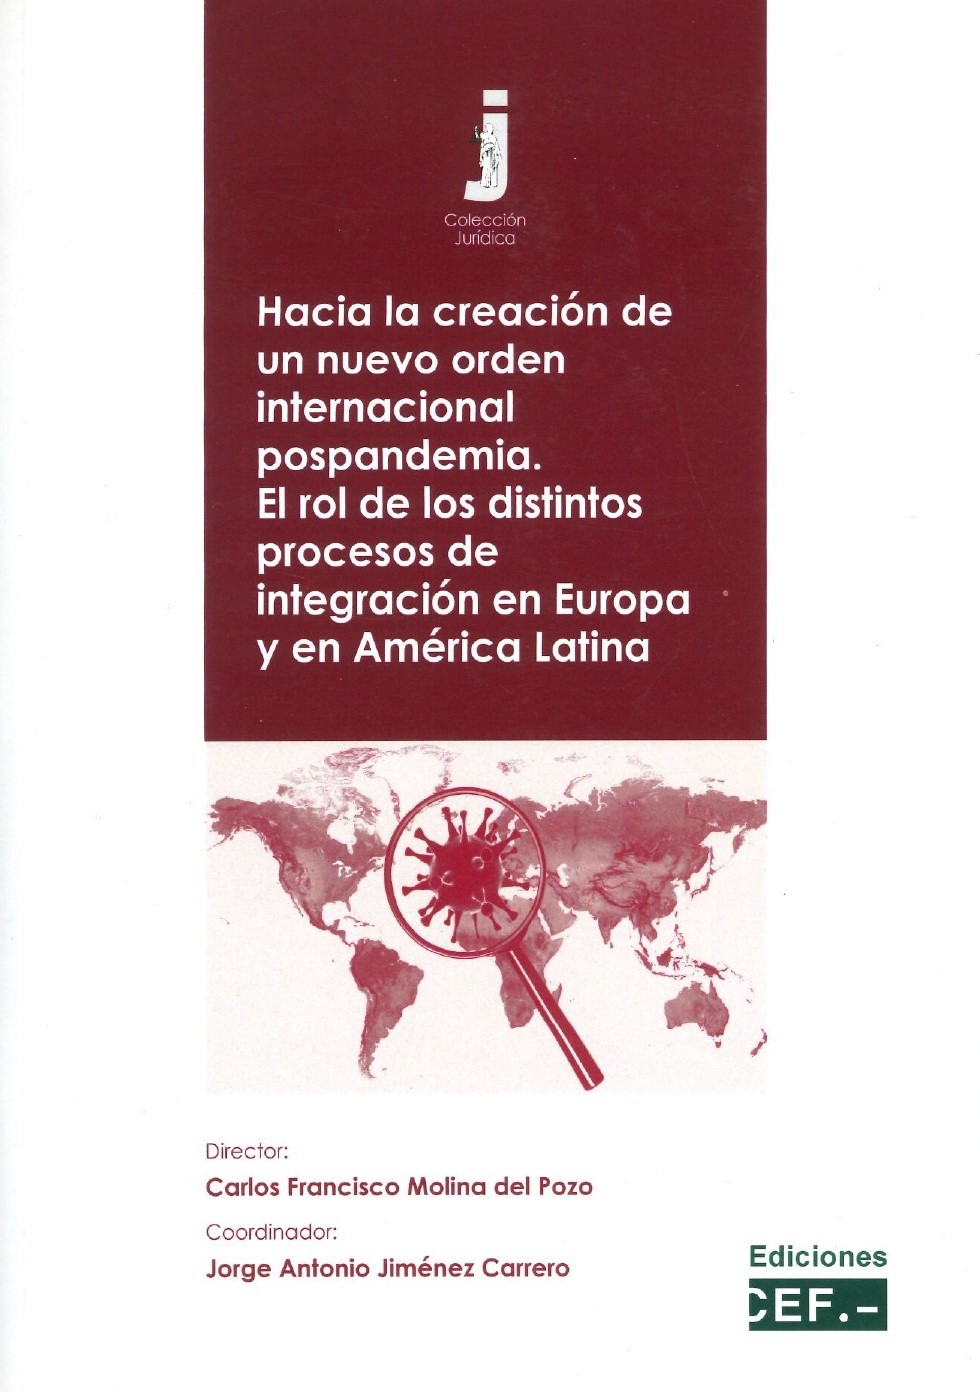 Imagen de portada del libro Hacia la creación de un nuevo orden internacional pospandemia